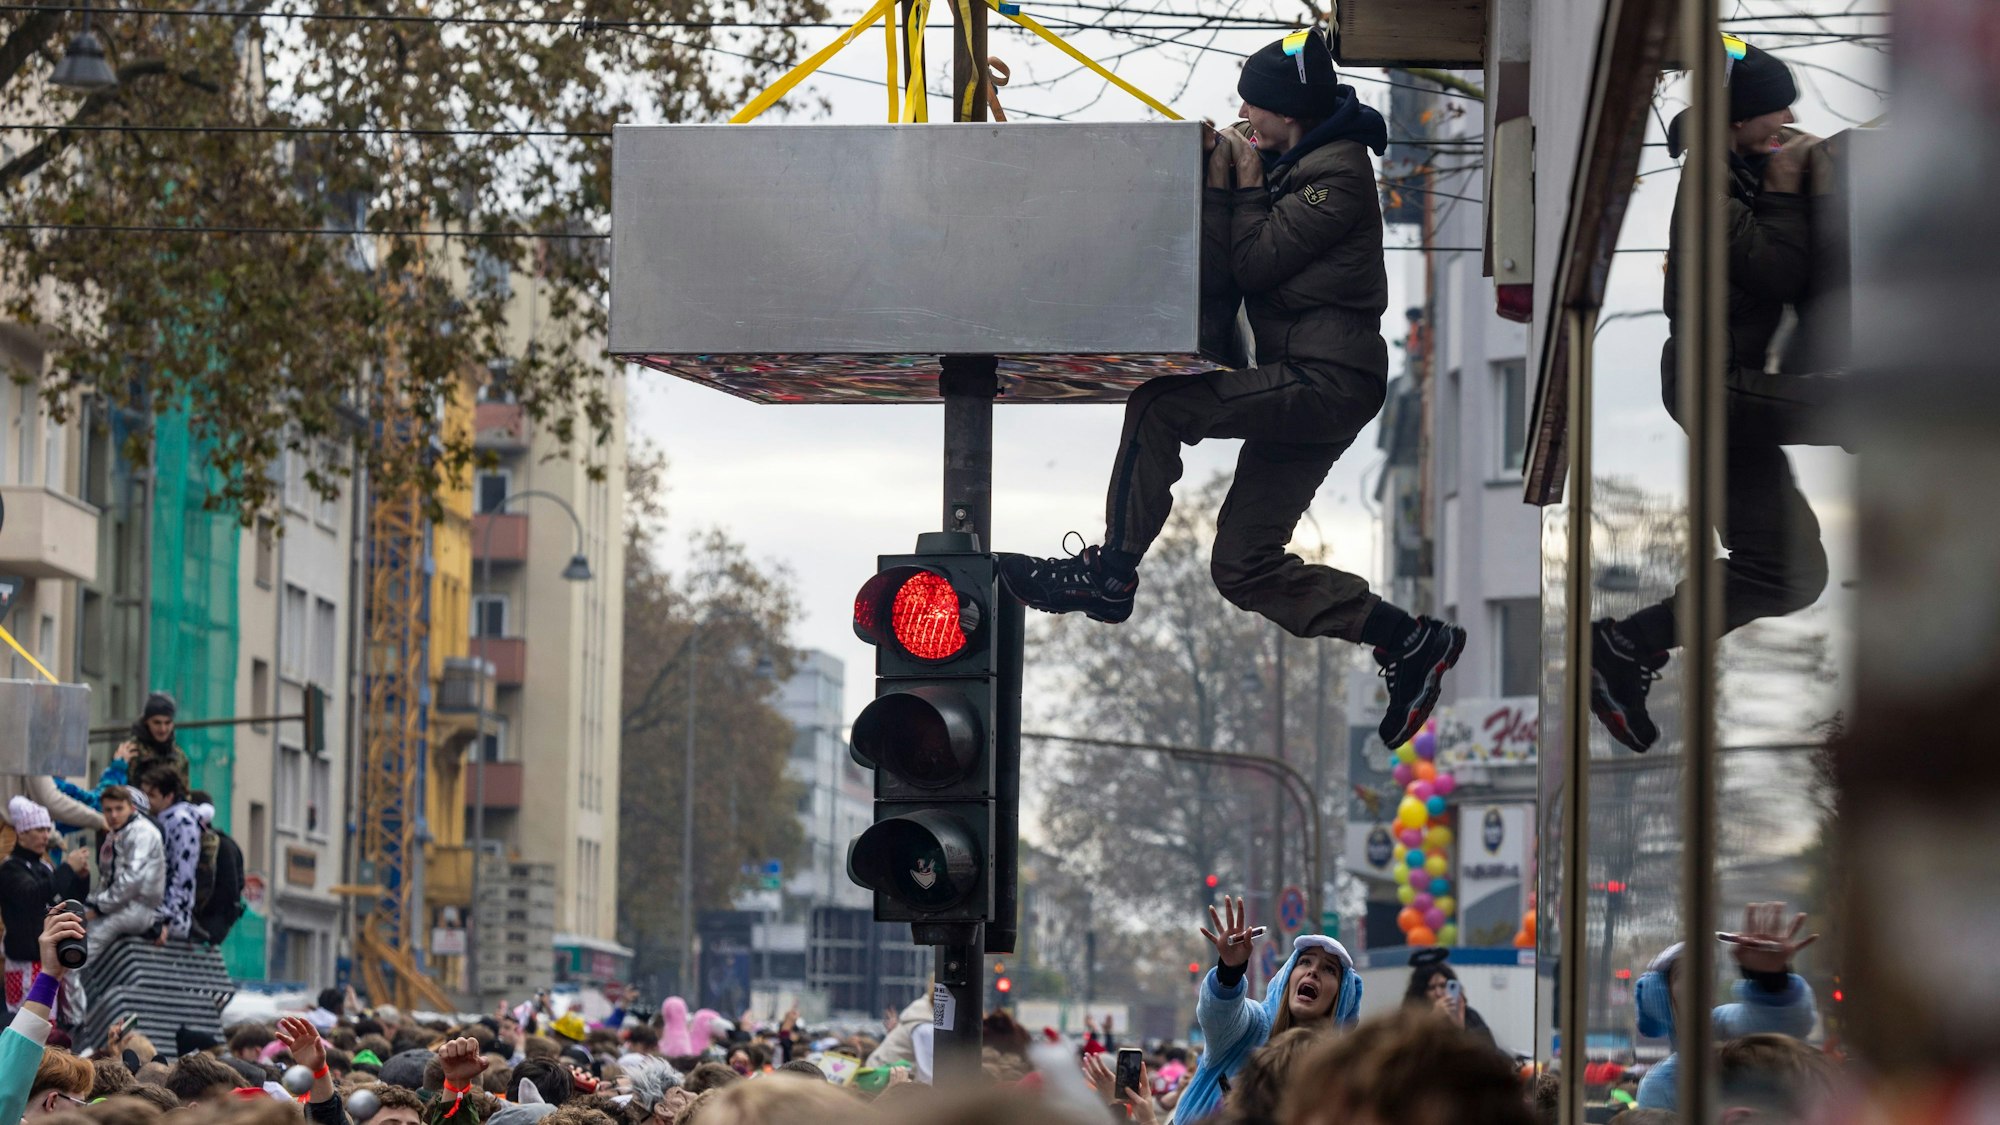 Ein Mann klettert auf einer Straßenampel, die angebrachte Klettersperre hindert ihn nicht.